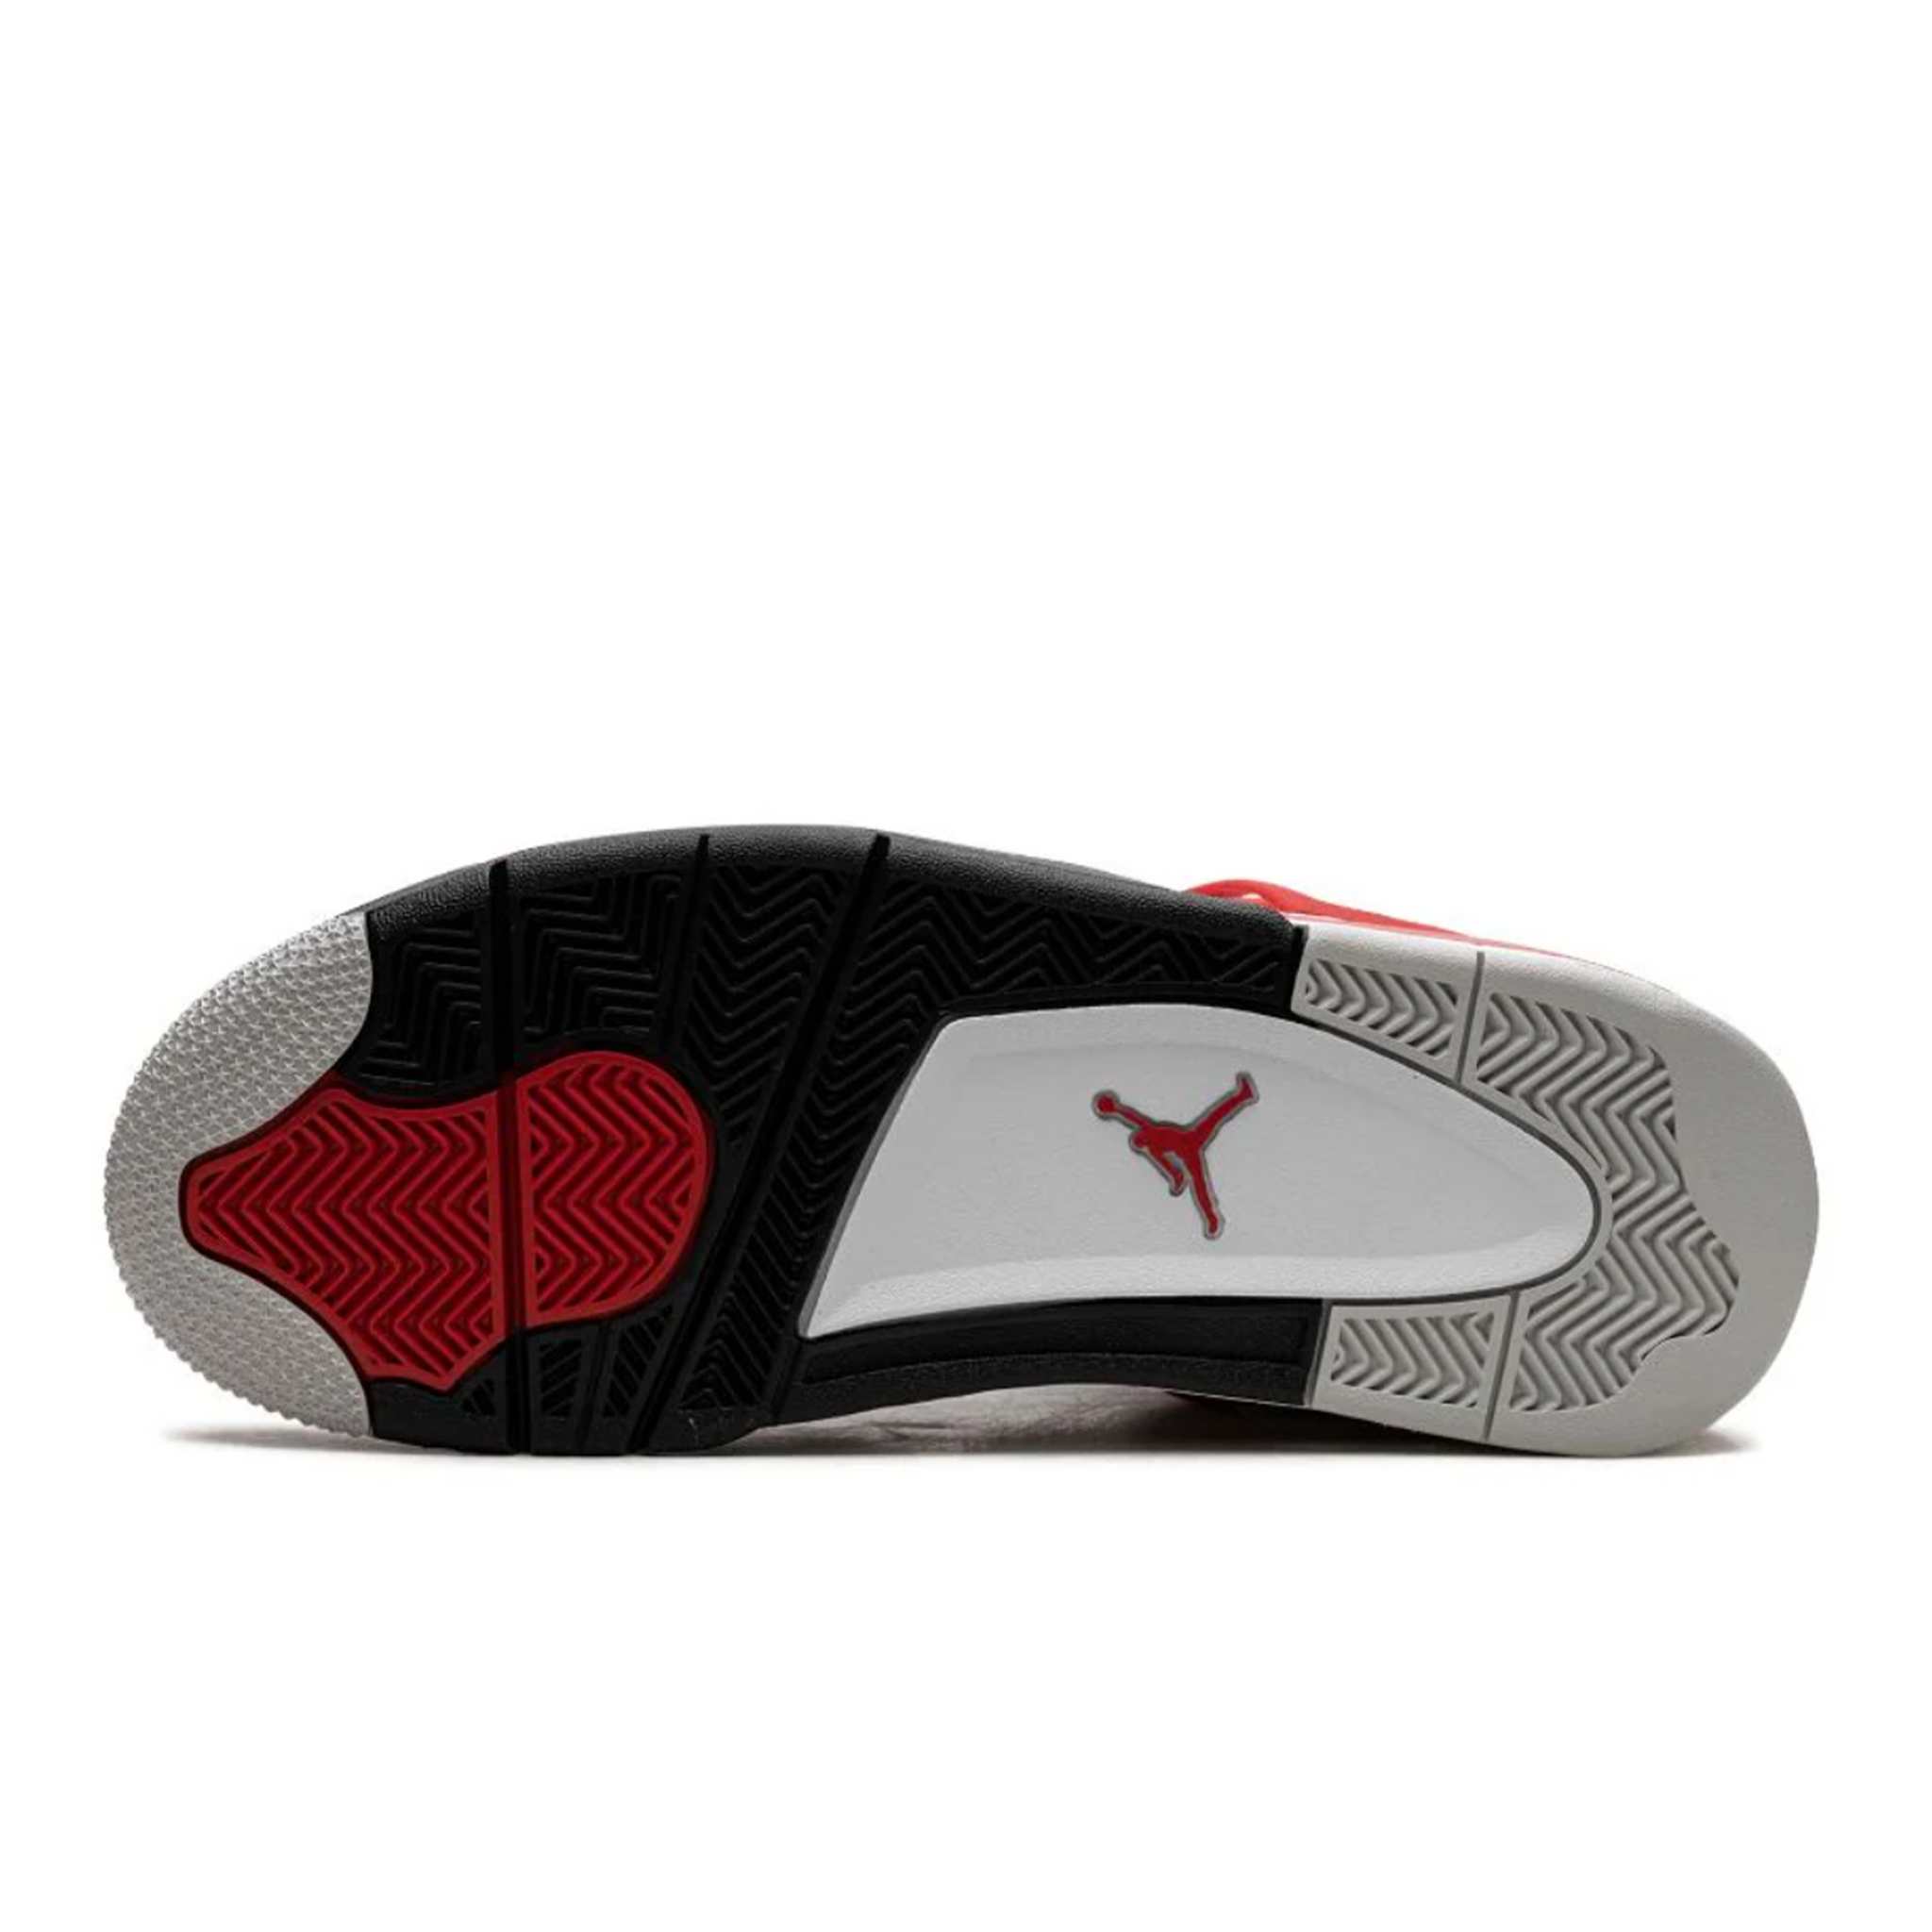 Air Jordan 4 "Red Cement"